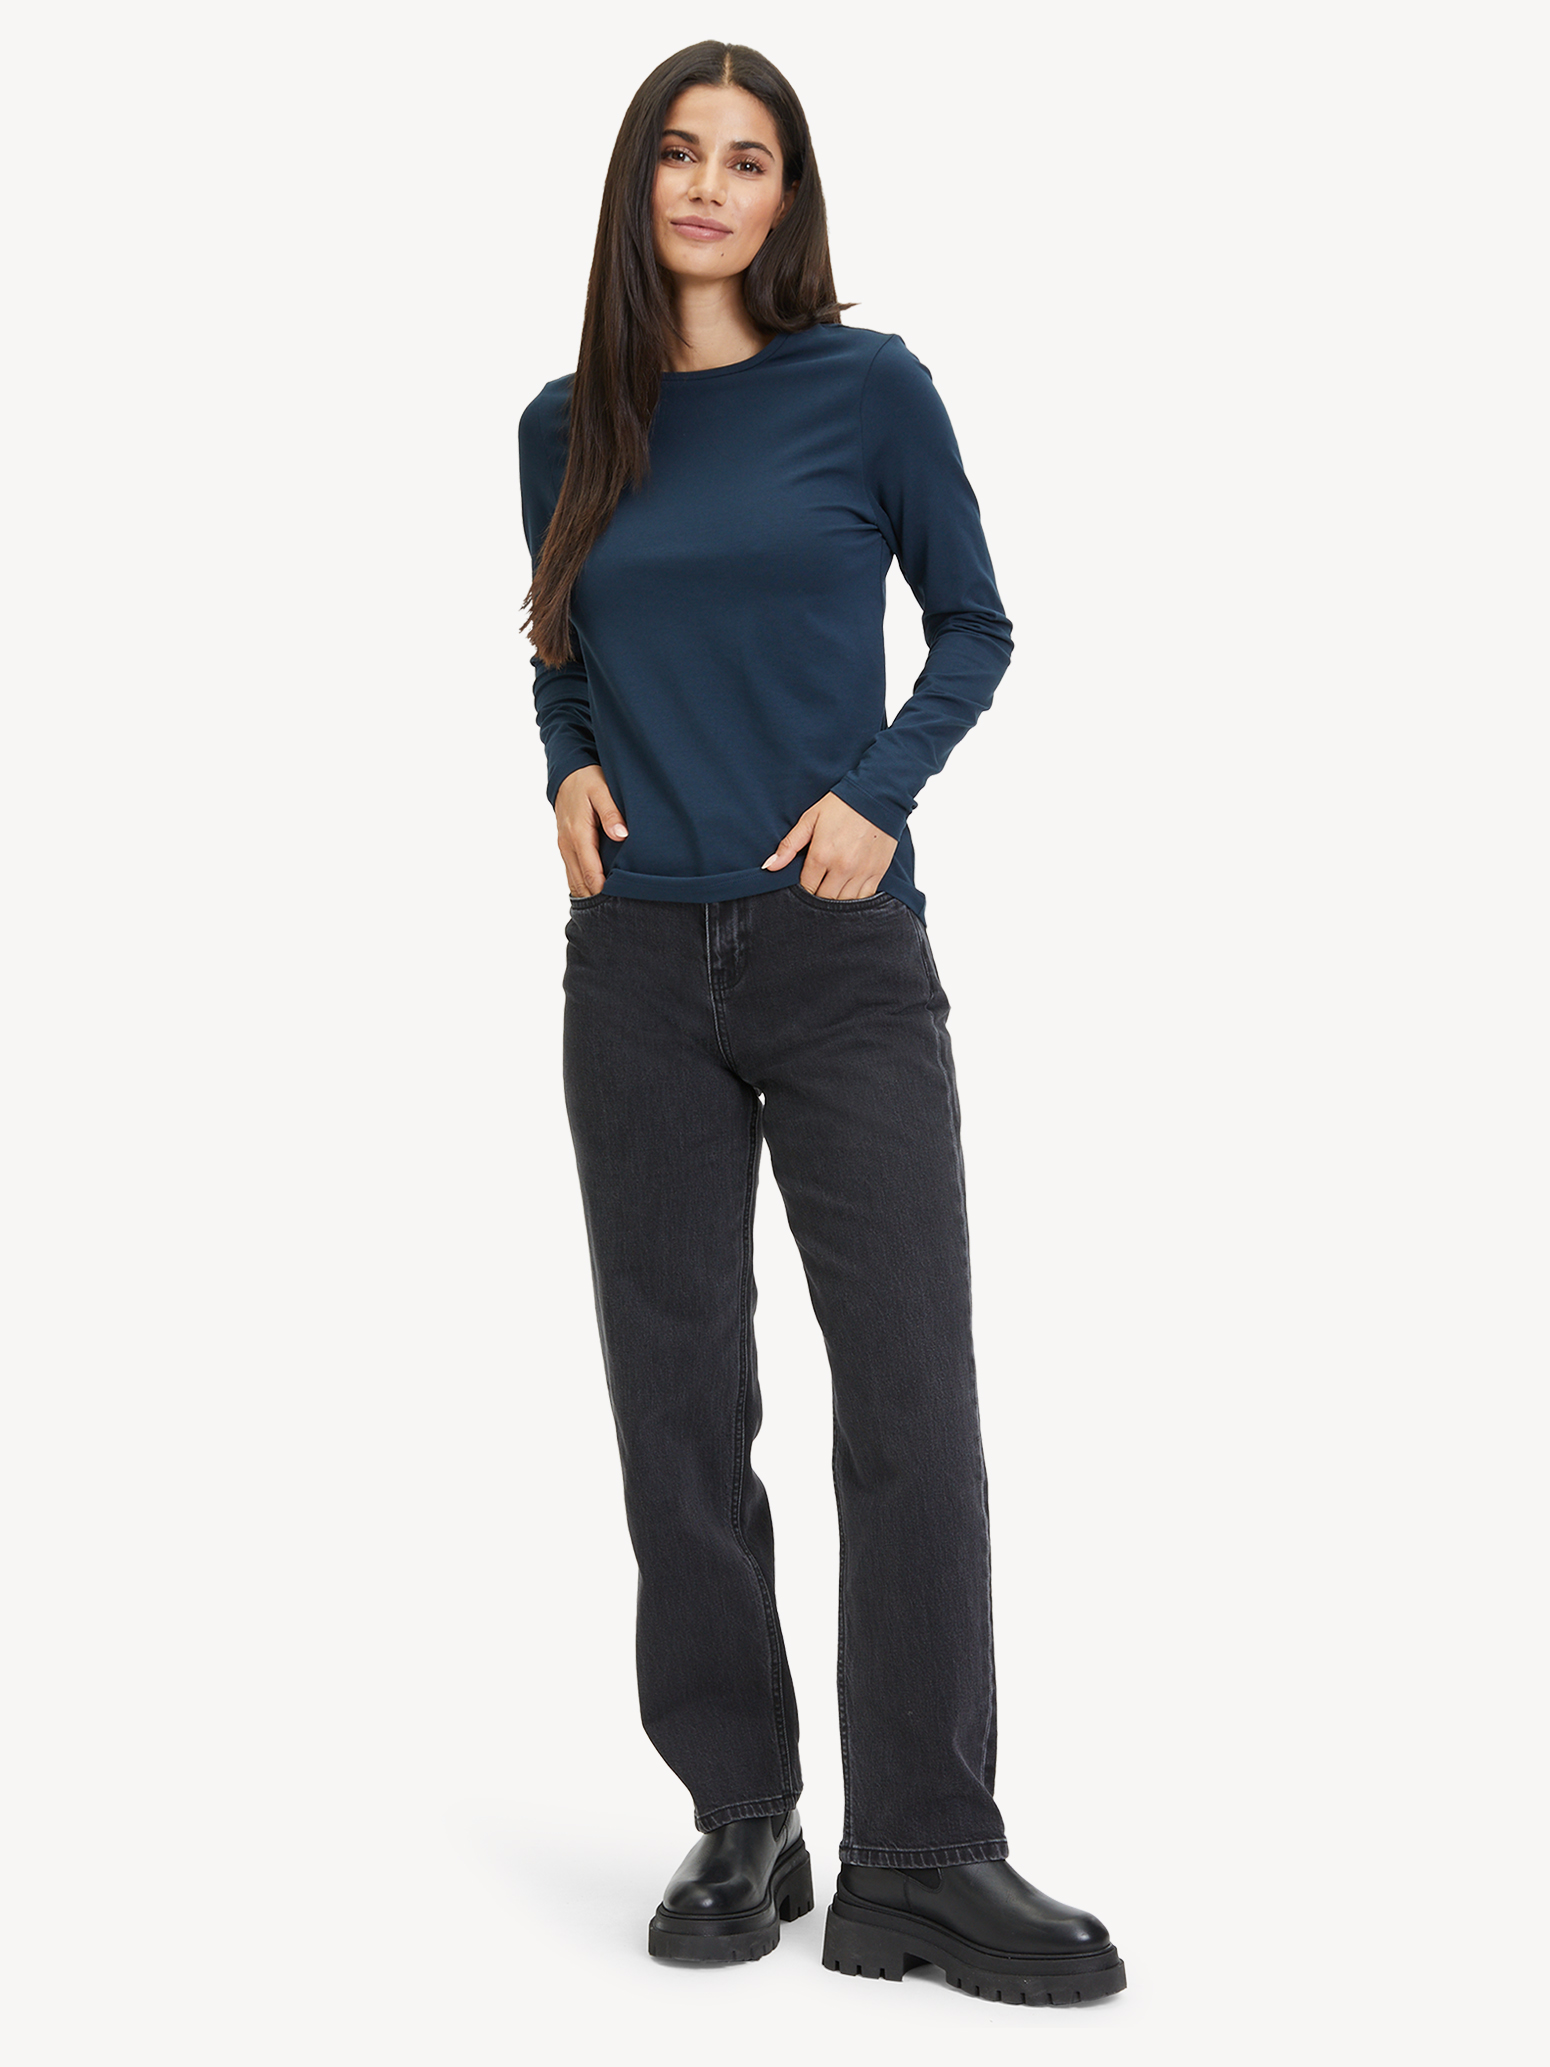 Langarmshirt - blau TAW0308-50059: Sweatshirts & kaufen! Tamaris Hoodies online